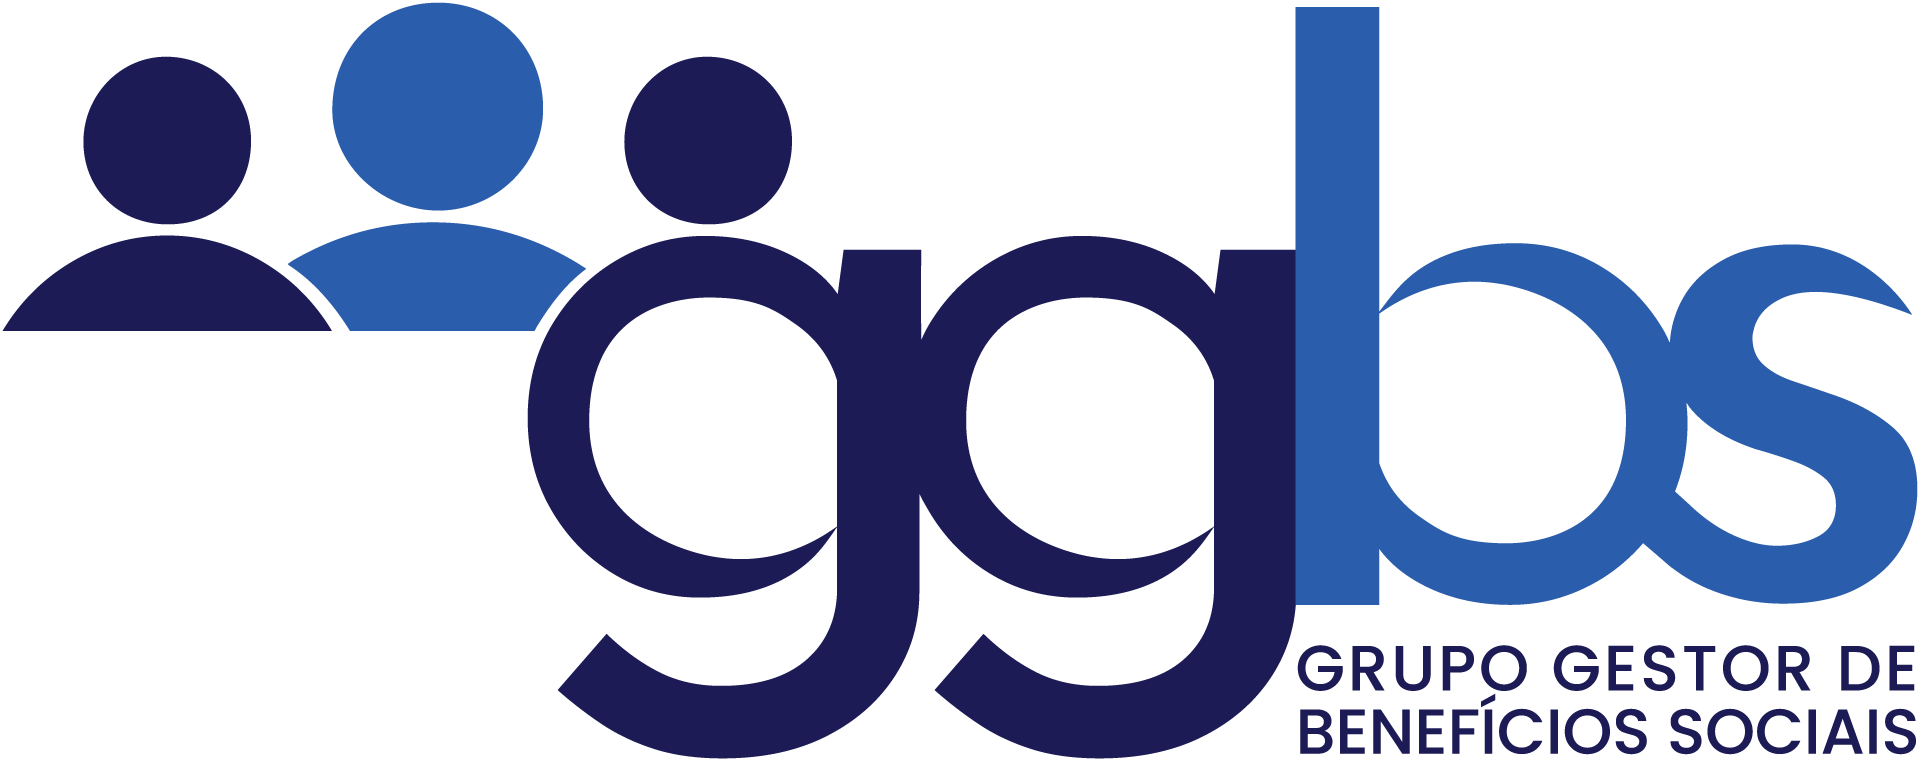 logotipo do GGBS